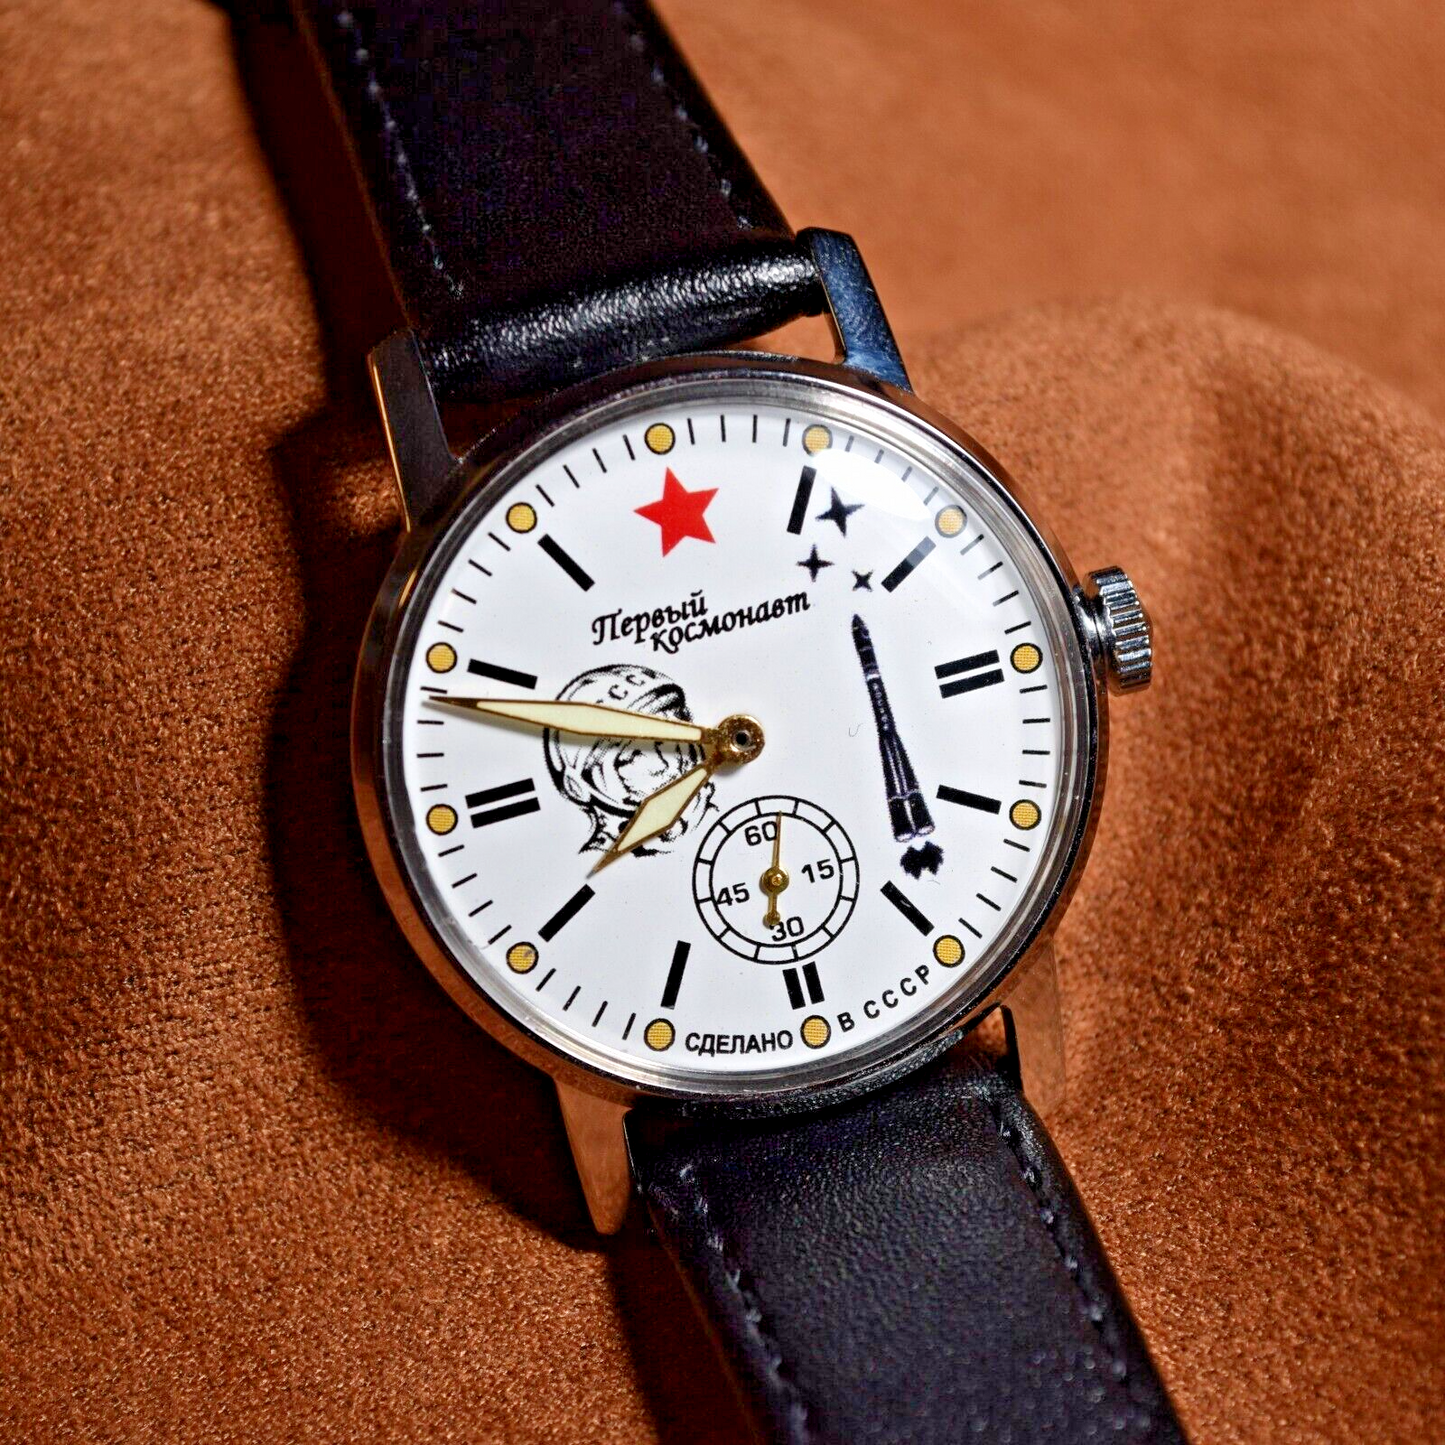 Soviet WristWatch Pobeda Space Program Yuri Gagarin Soviet Vintage Watch USSR